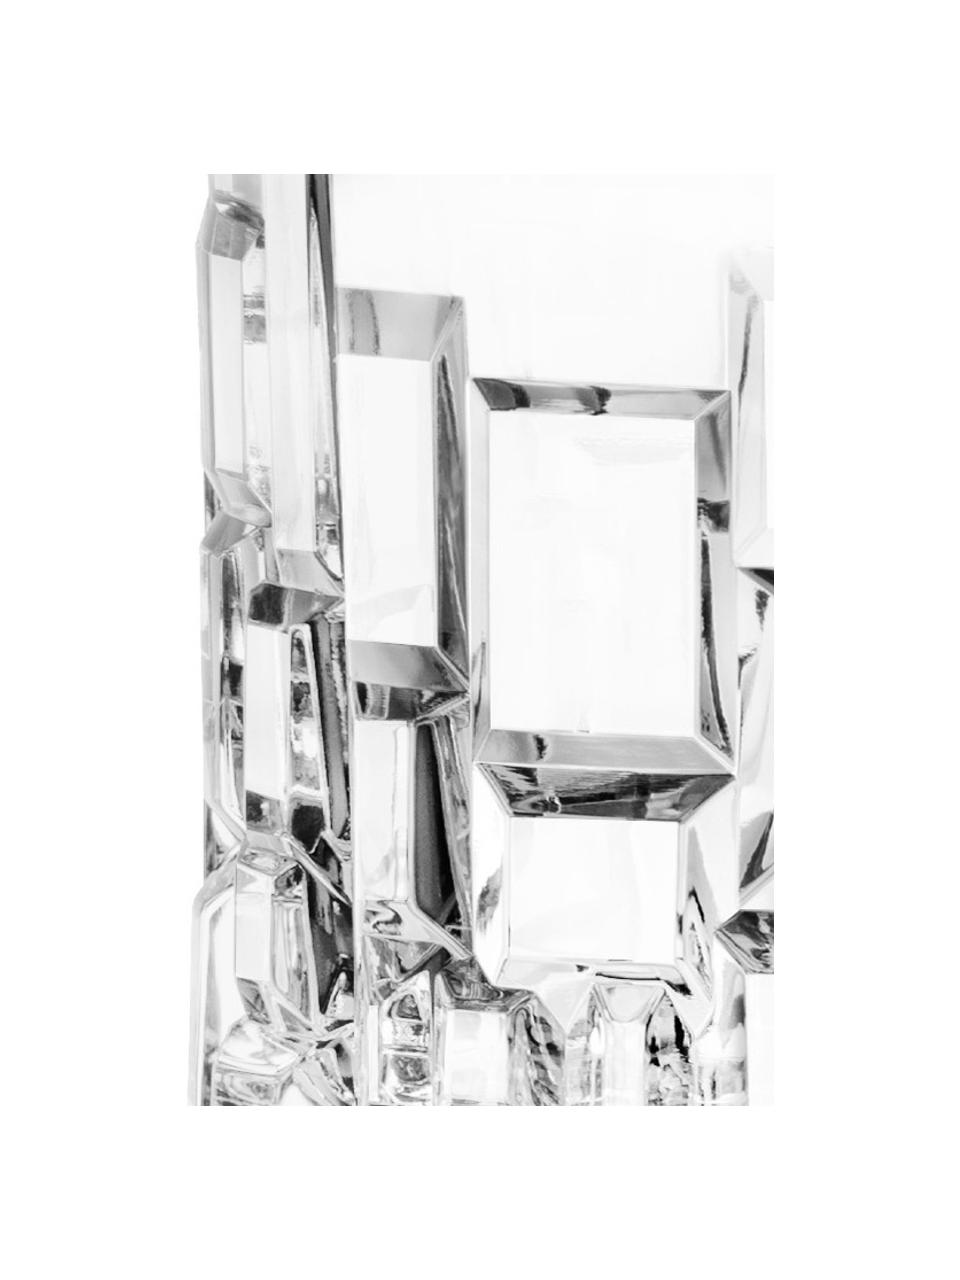 Křišťálové sklenice Etna, 6 ks, Křišťál, Transparentní, Ø 8 cm, V 9 cm, 320 ml